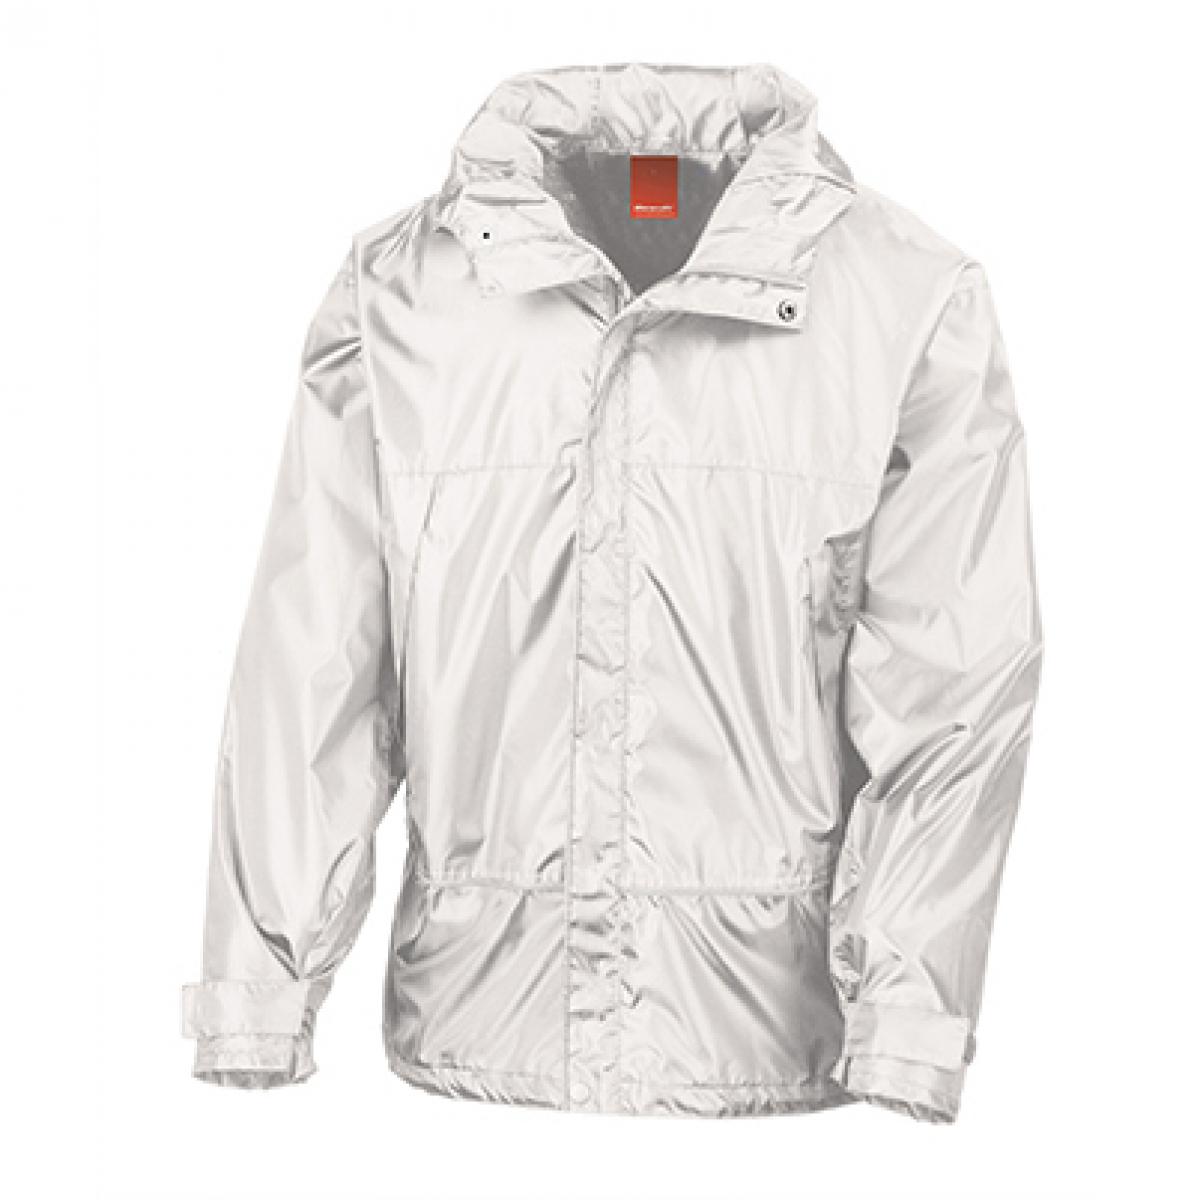 Hersteller: Result Herstellernummer: R155X Artikelbezeichnung: Pro Coach Jacket Farbe: White